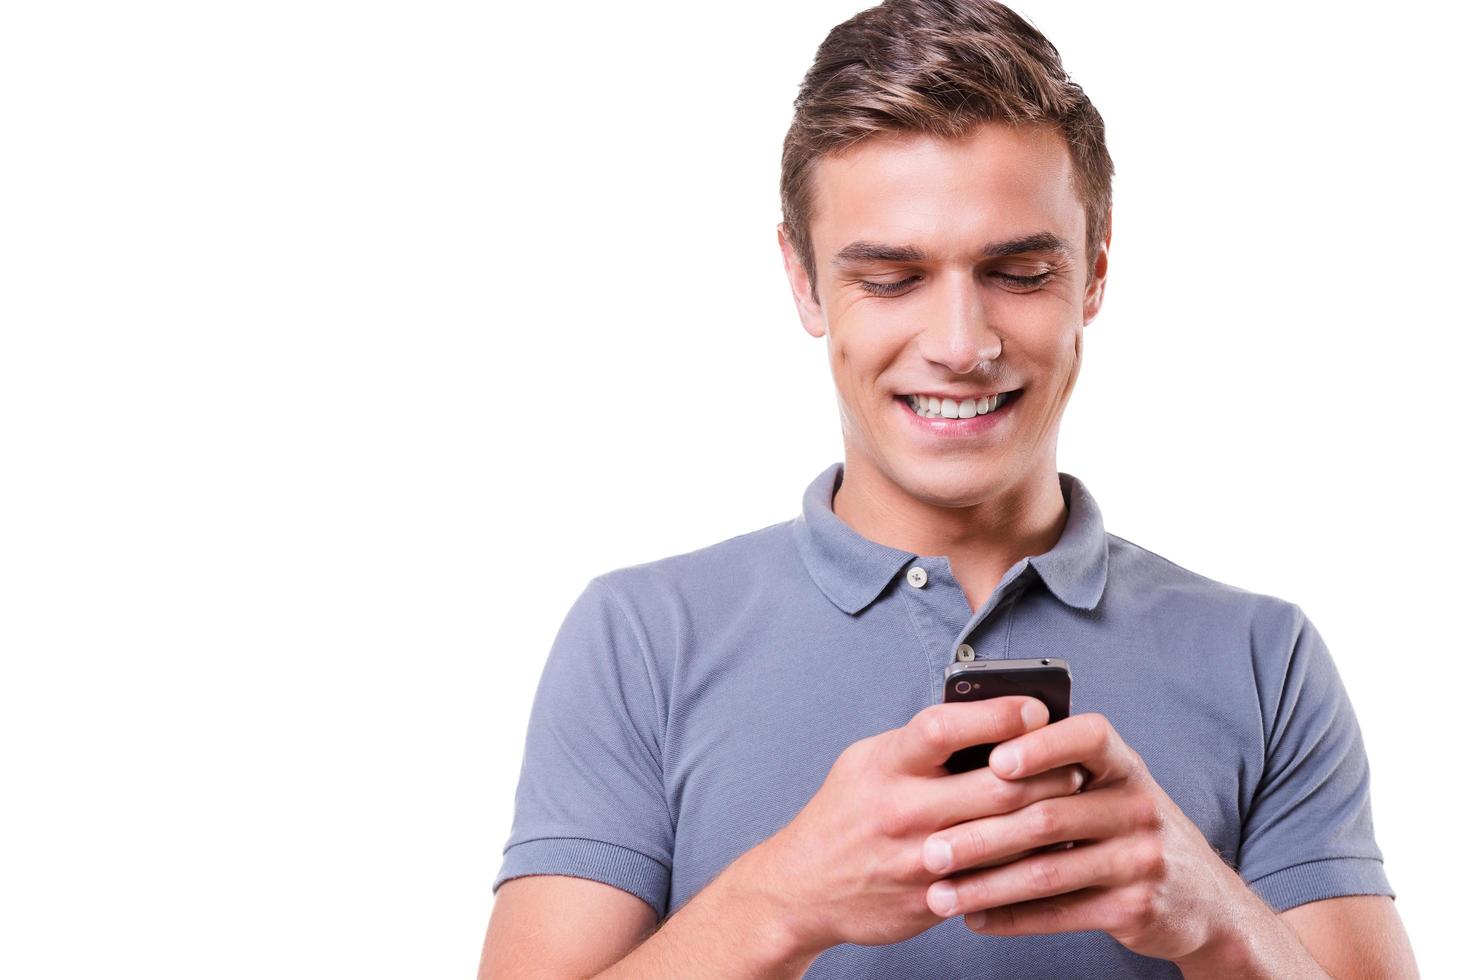 enviando mensagem para um amigo. jovem feliz segurando o celular e olhando para ele com um sorriso em pé isolado no fundo branco foto